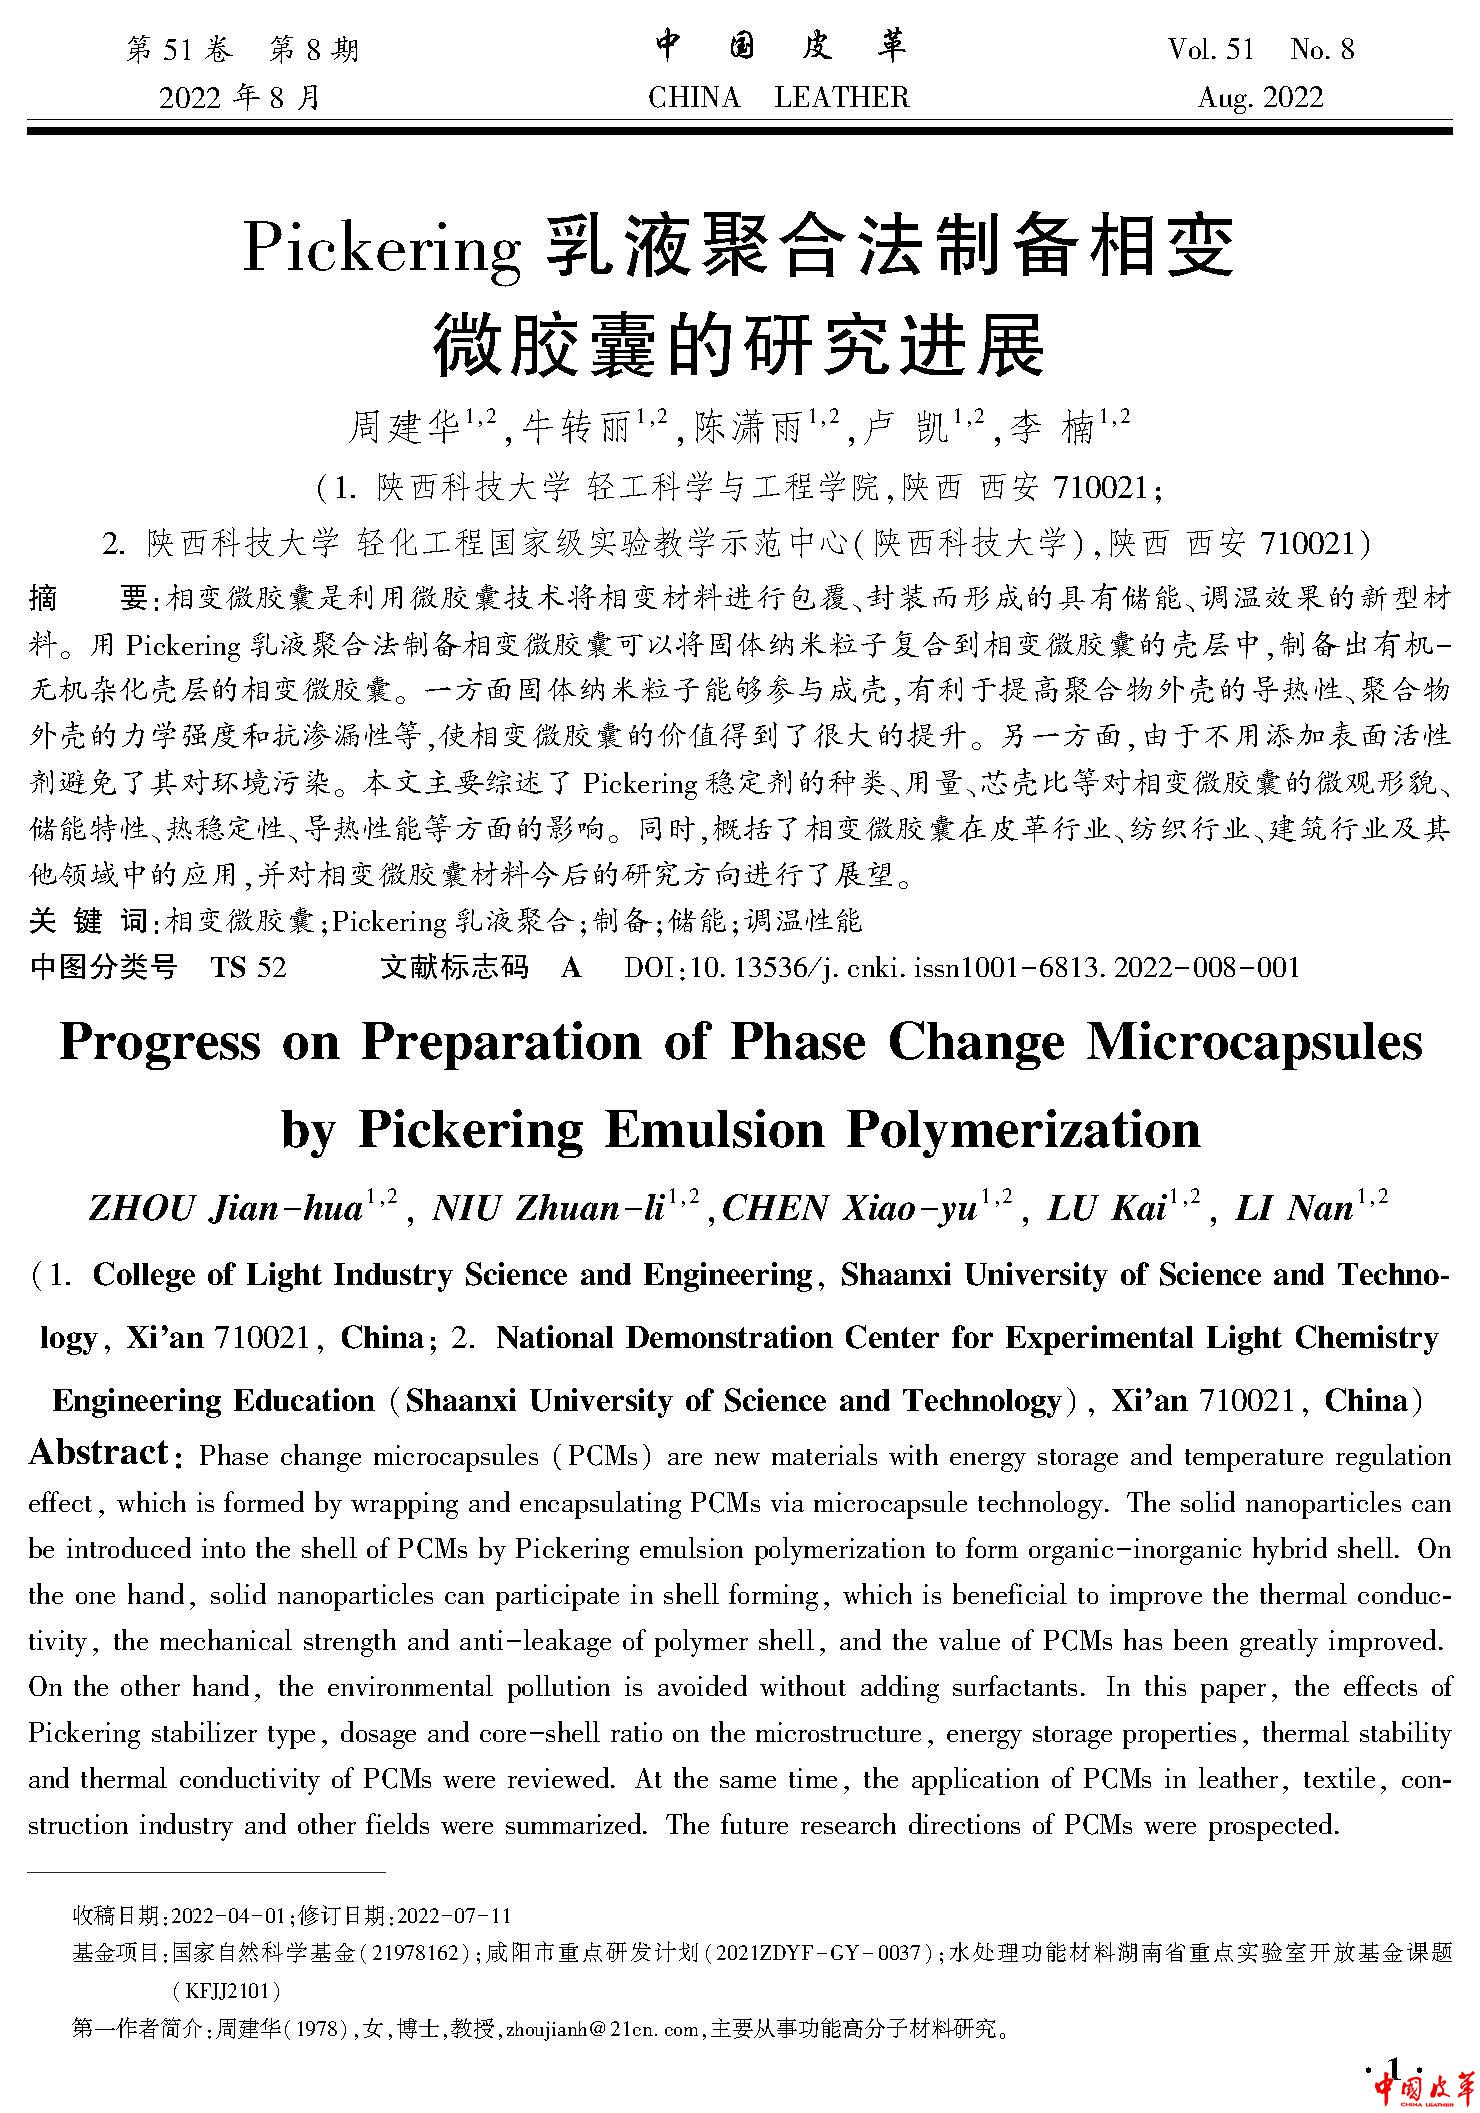 页面提取自－P1-144中国皮革2022年第8期.jpg